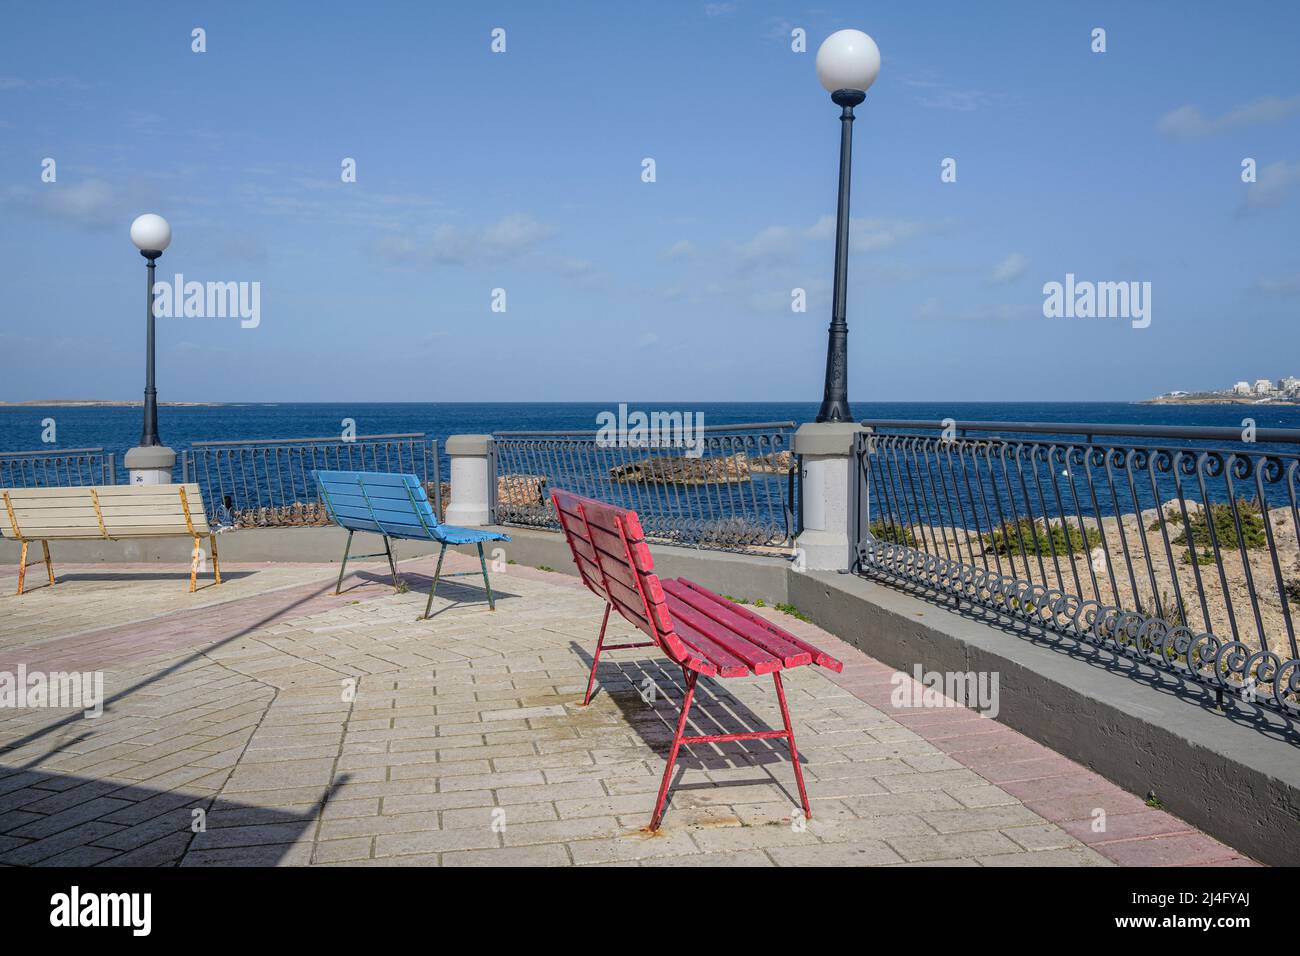 Bancs peints en couleurs sur le front de mer déserté de la baie de St Paul hors saison, Malte Banque D'Images